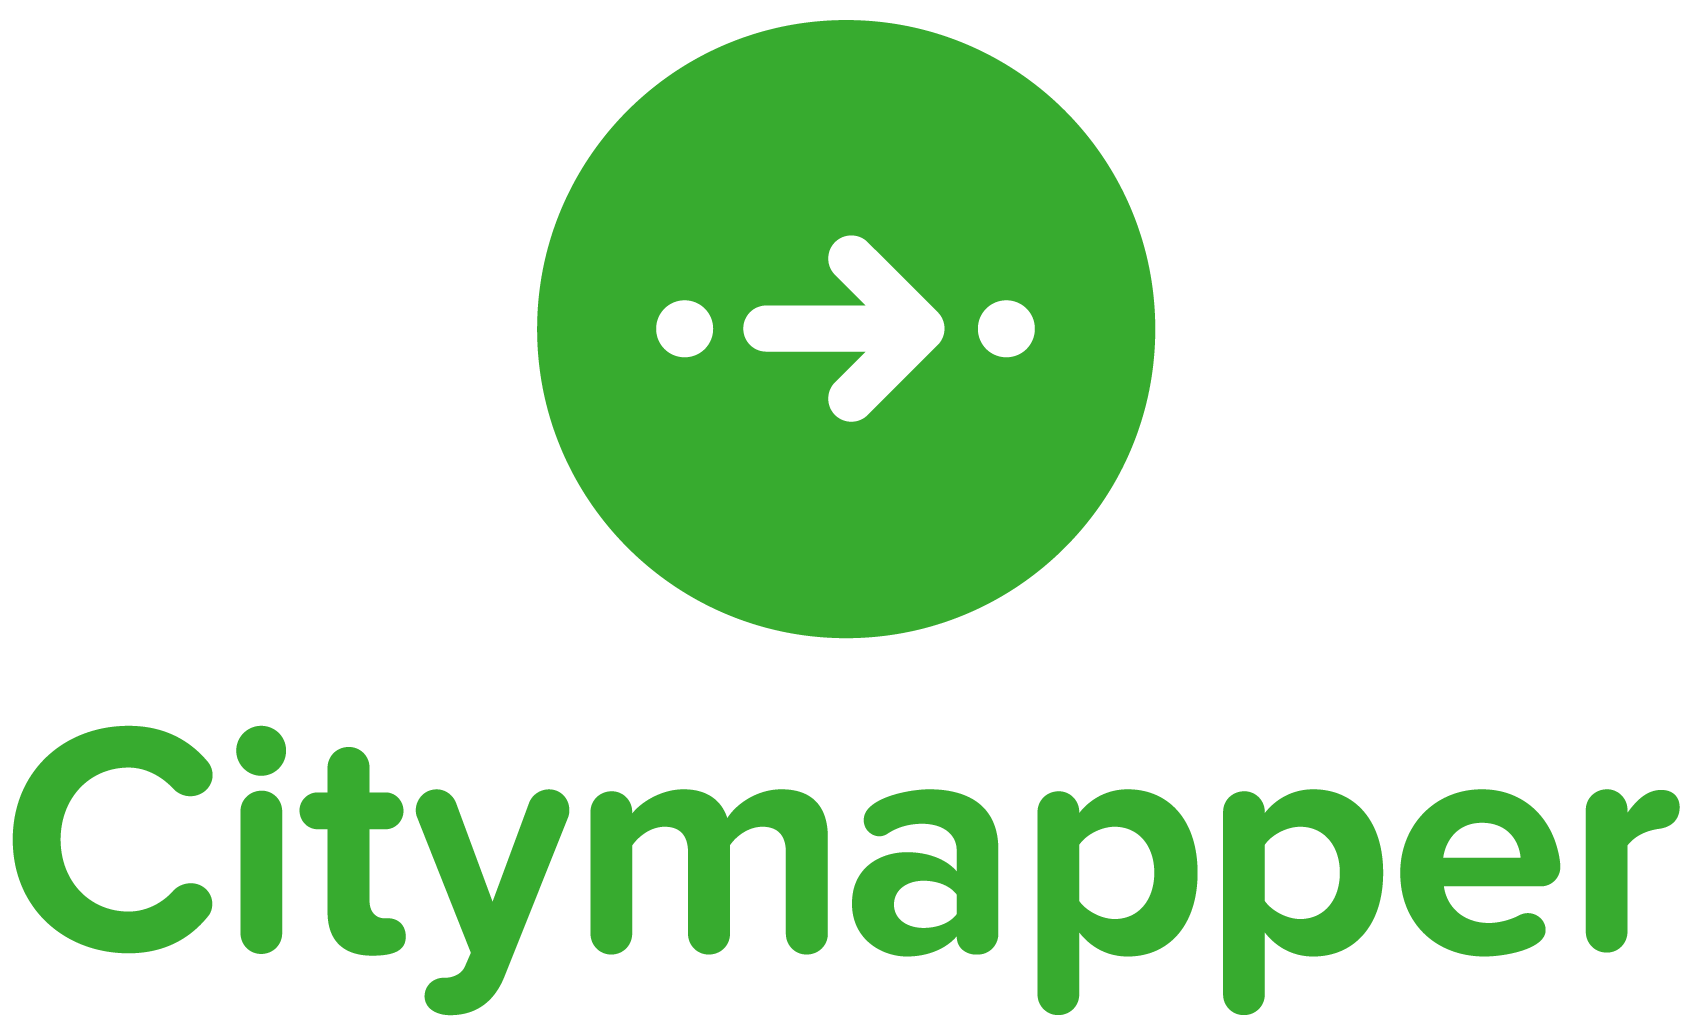 Citymapper logo colors